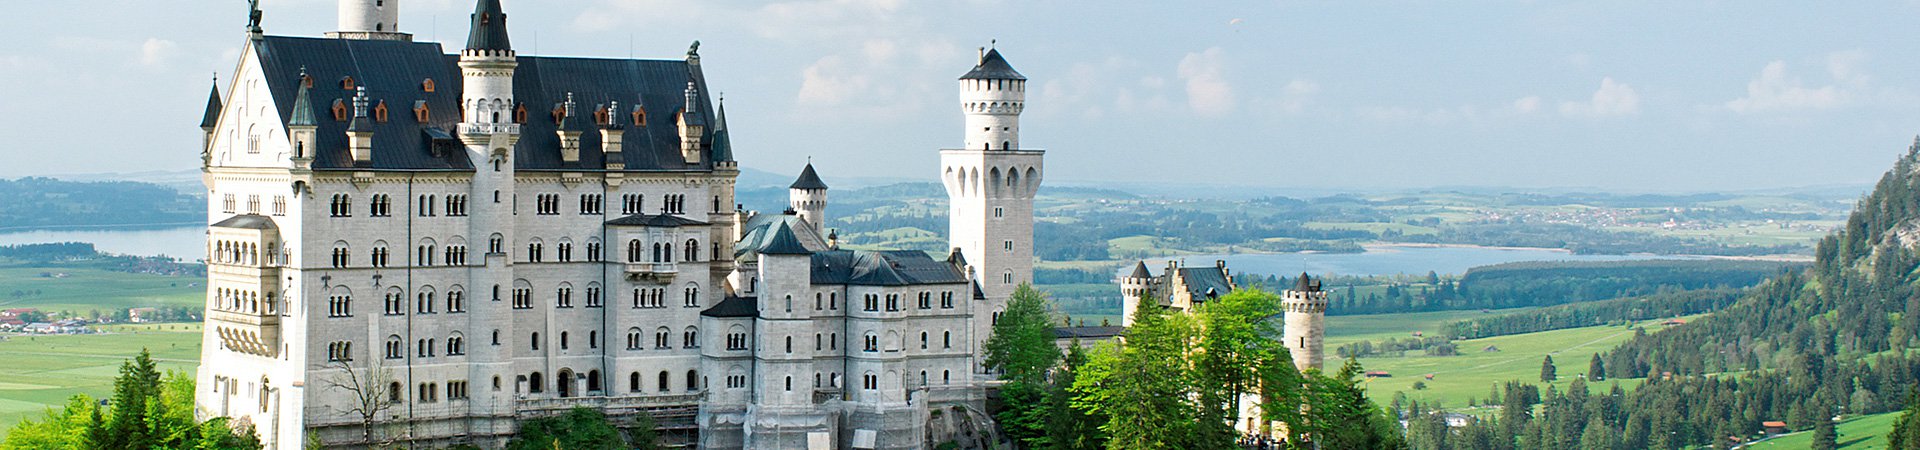 Ansicht des Schlosses NEuschwanstein